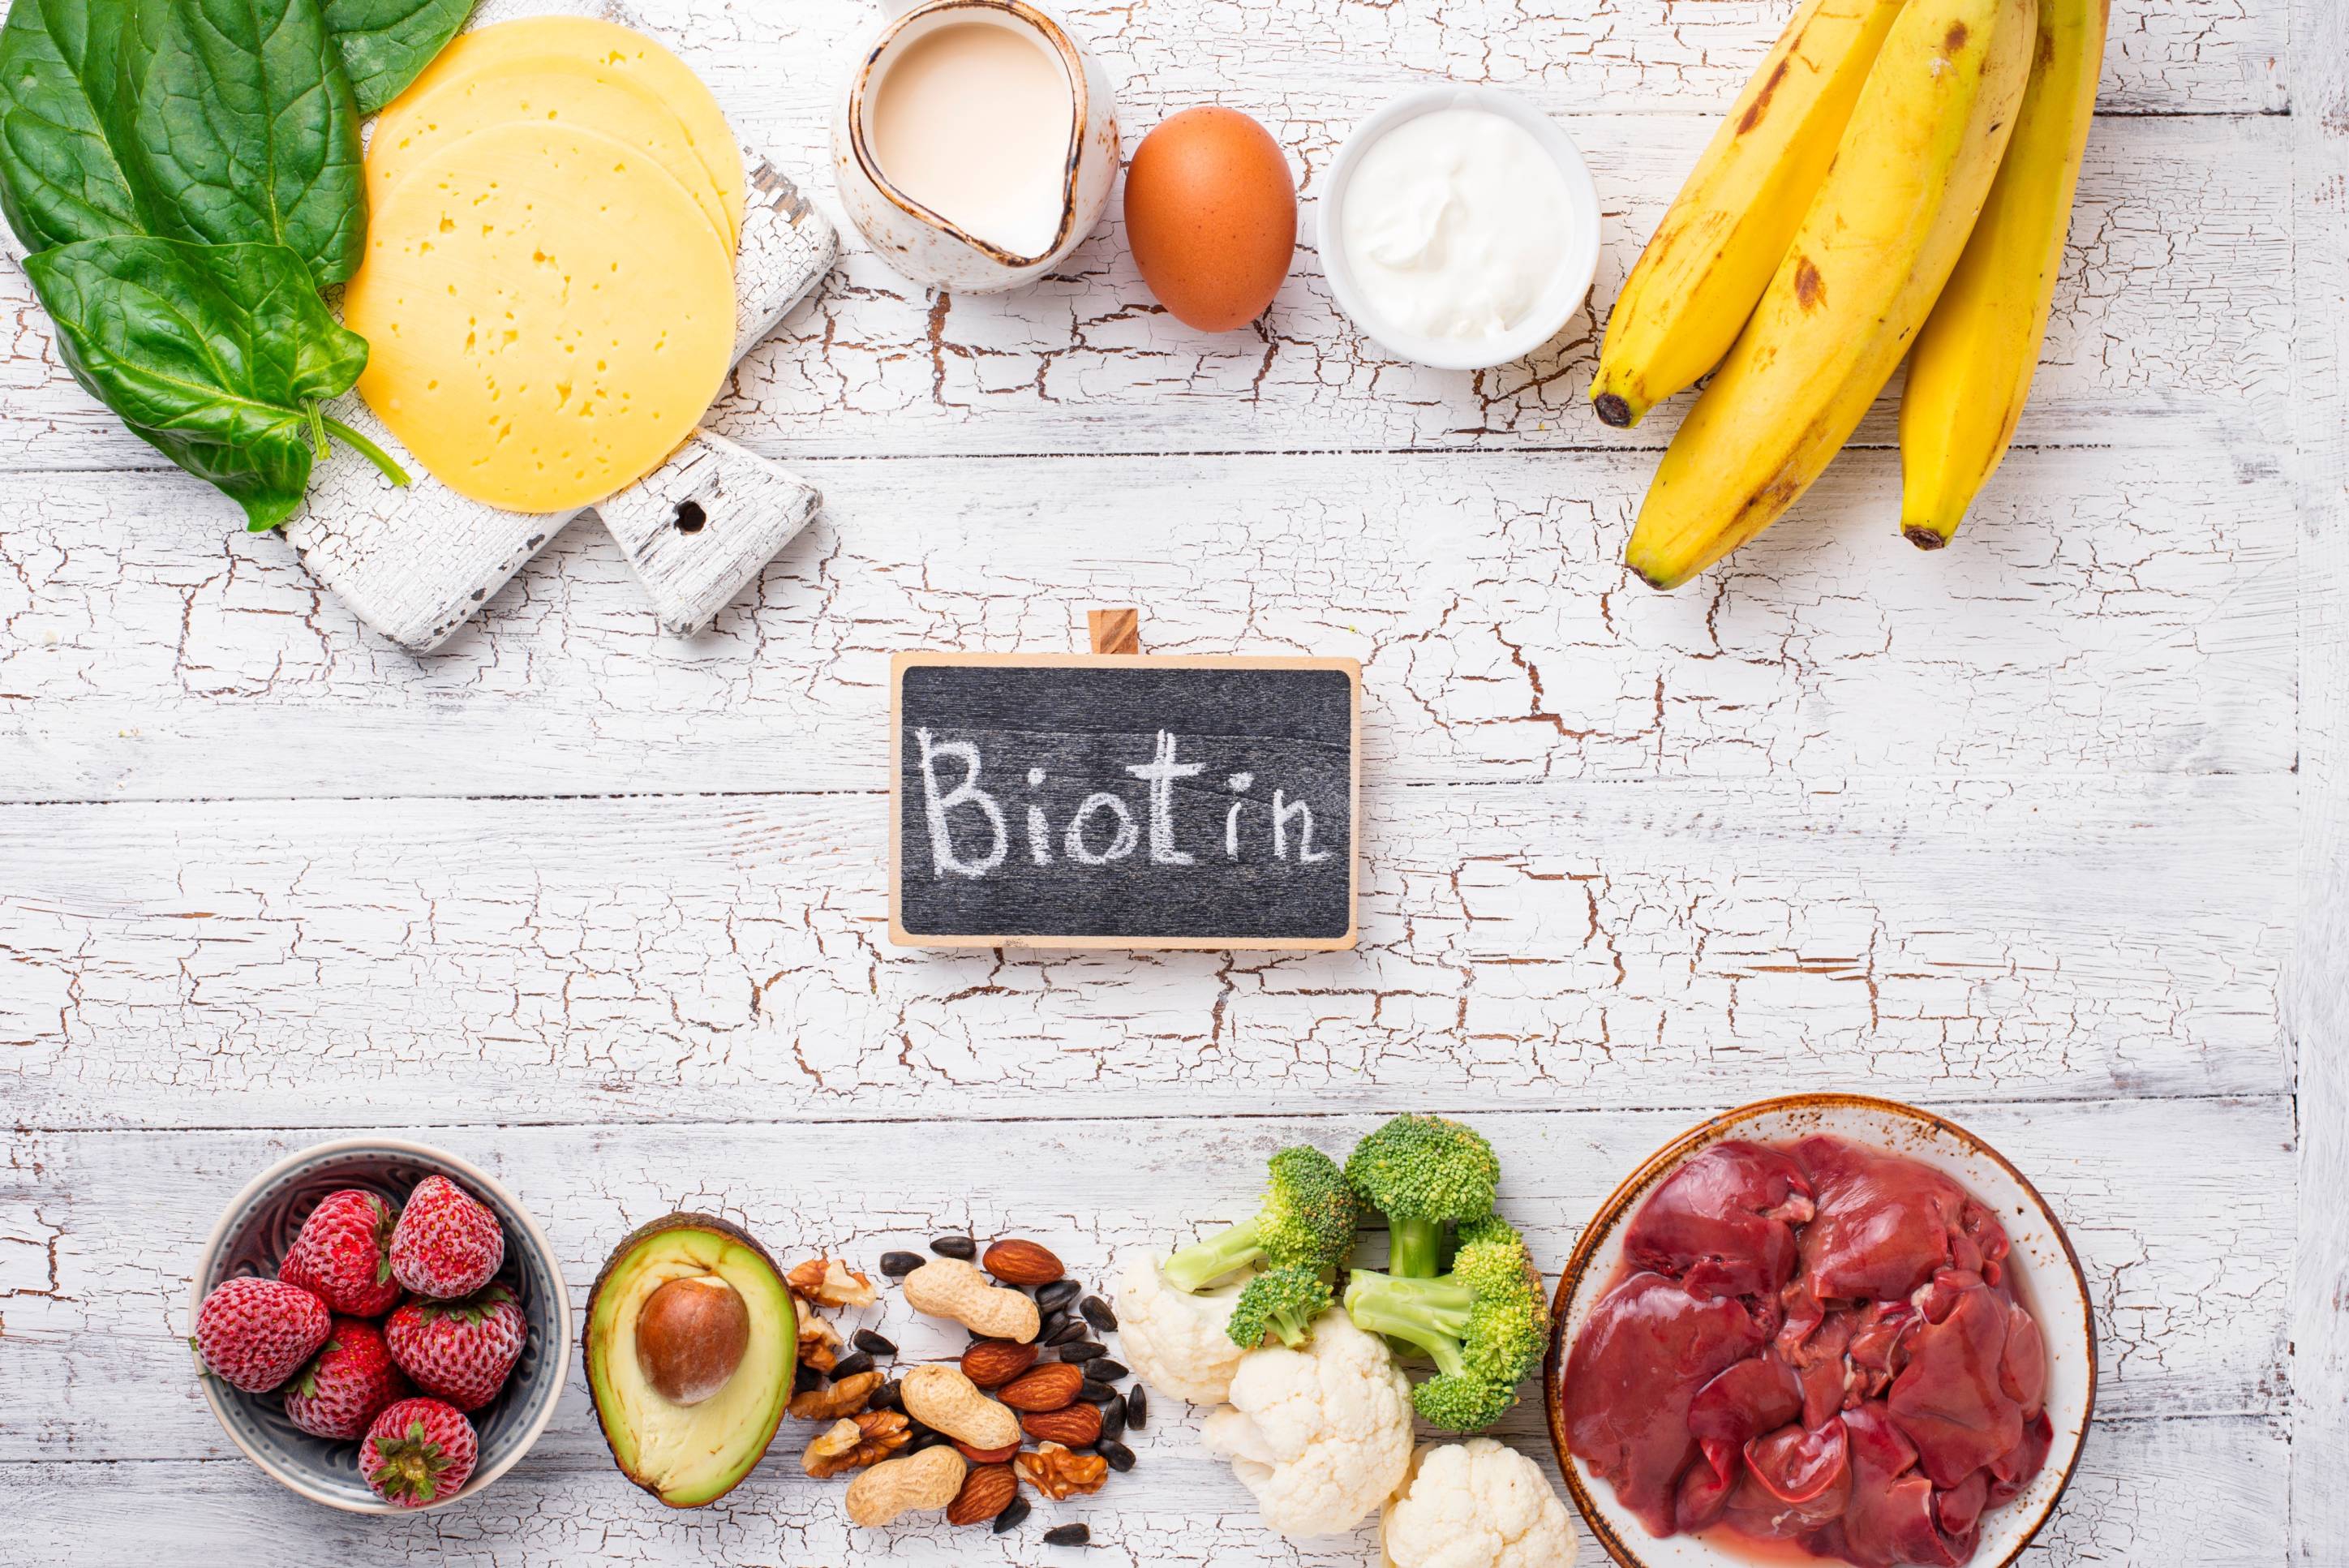 Cách lưu trữ vitamin B8 (biotin) sao cho tốt nhất?
